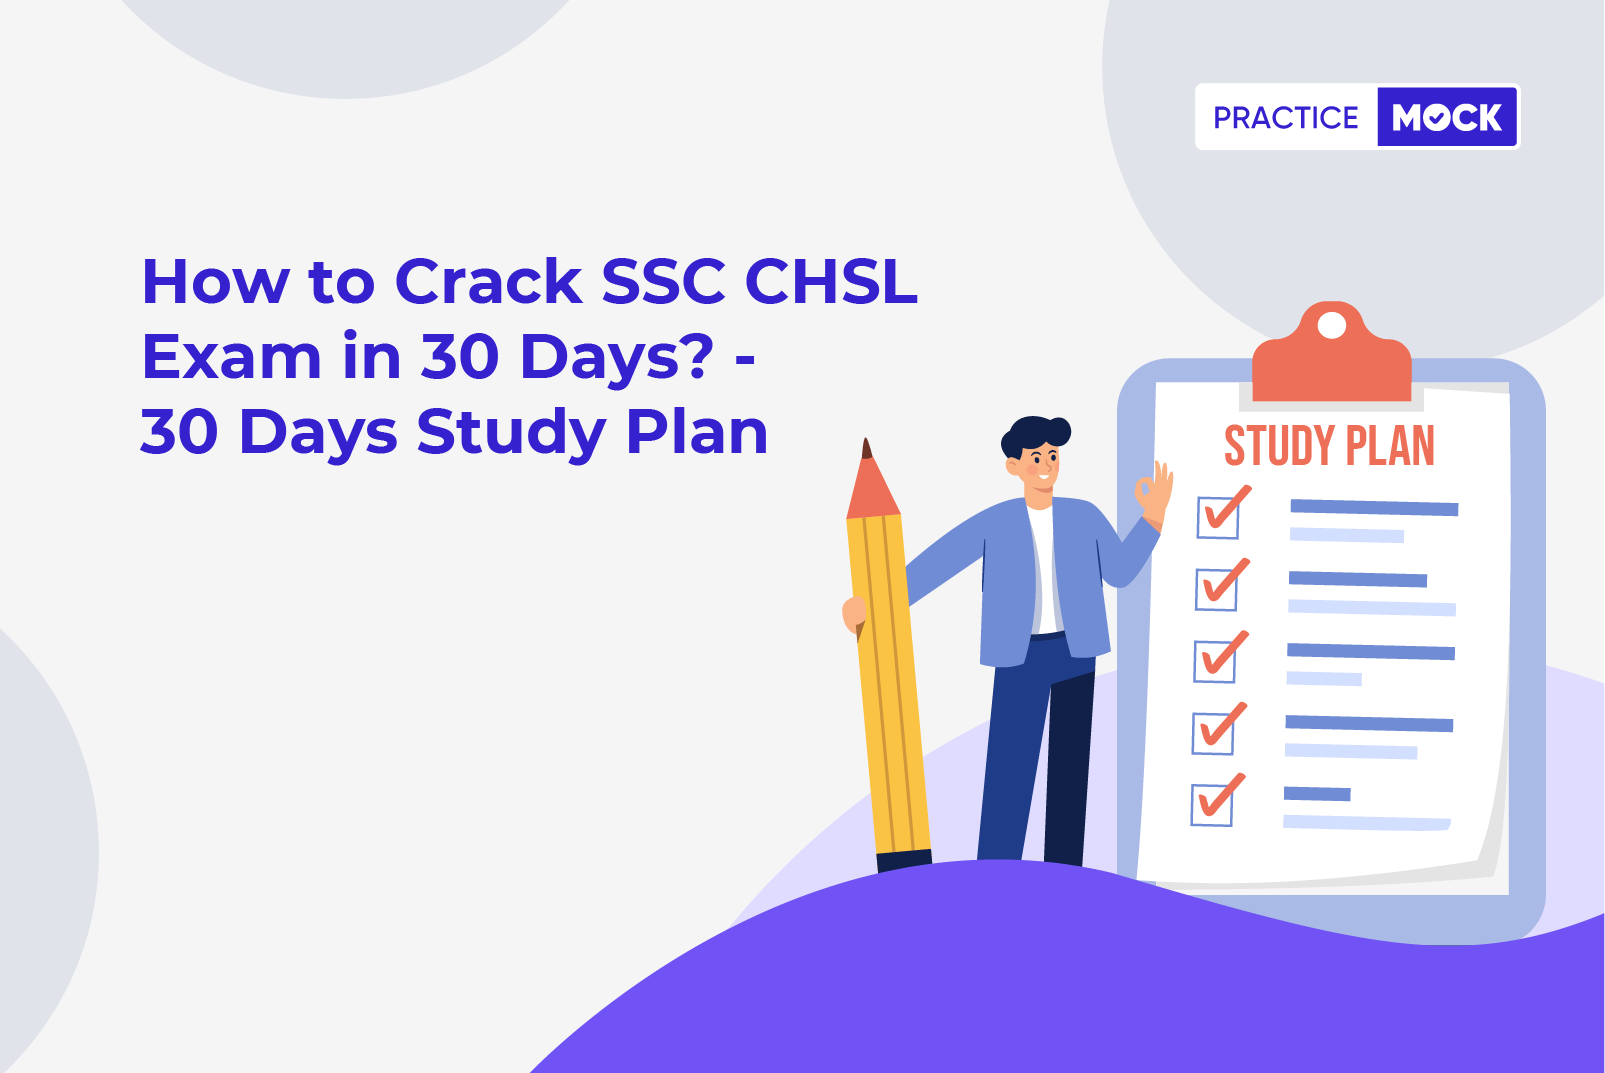 SSC CHSL Study Plan